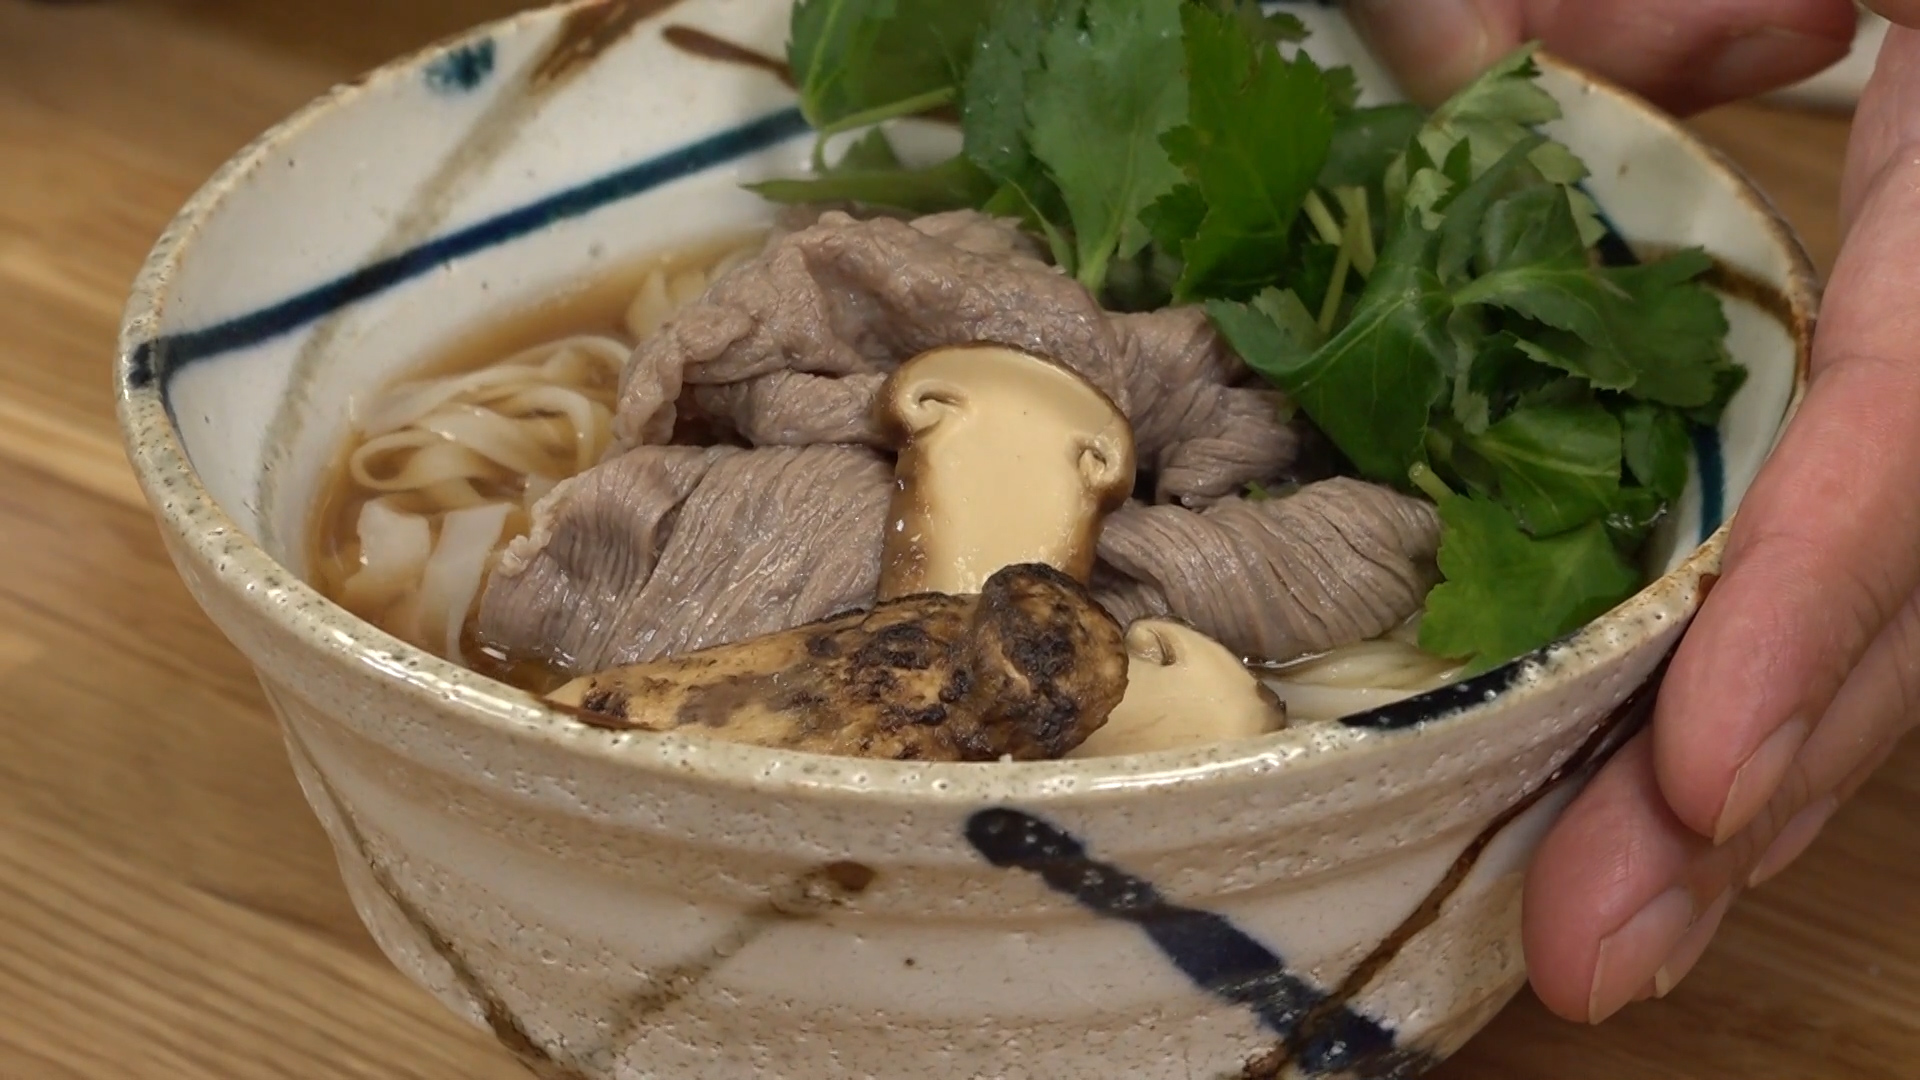 Bát phở truyền thống thay đổi  thế nào qua bàn tay đầu bếp Nhật với loại nấm đắt đỏ? - Ảnh 7.